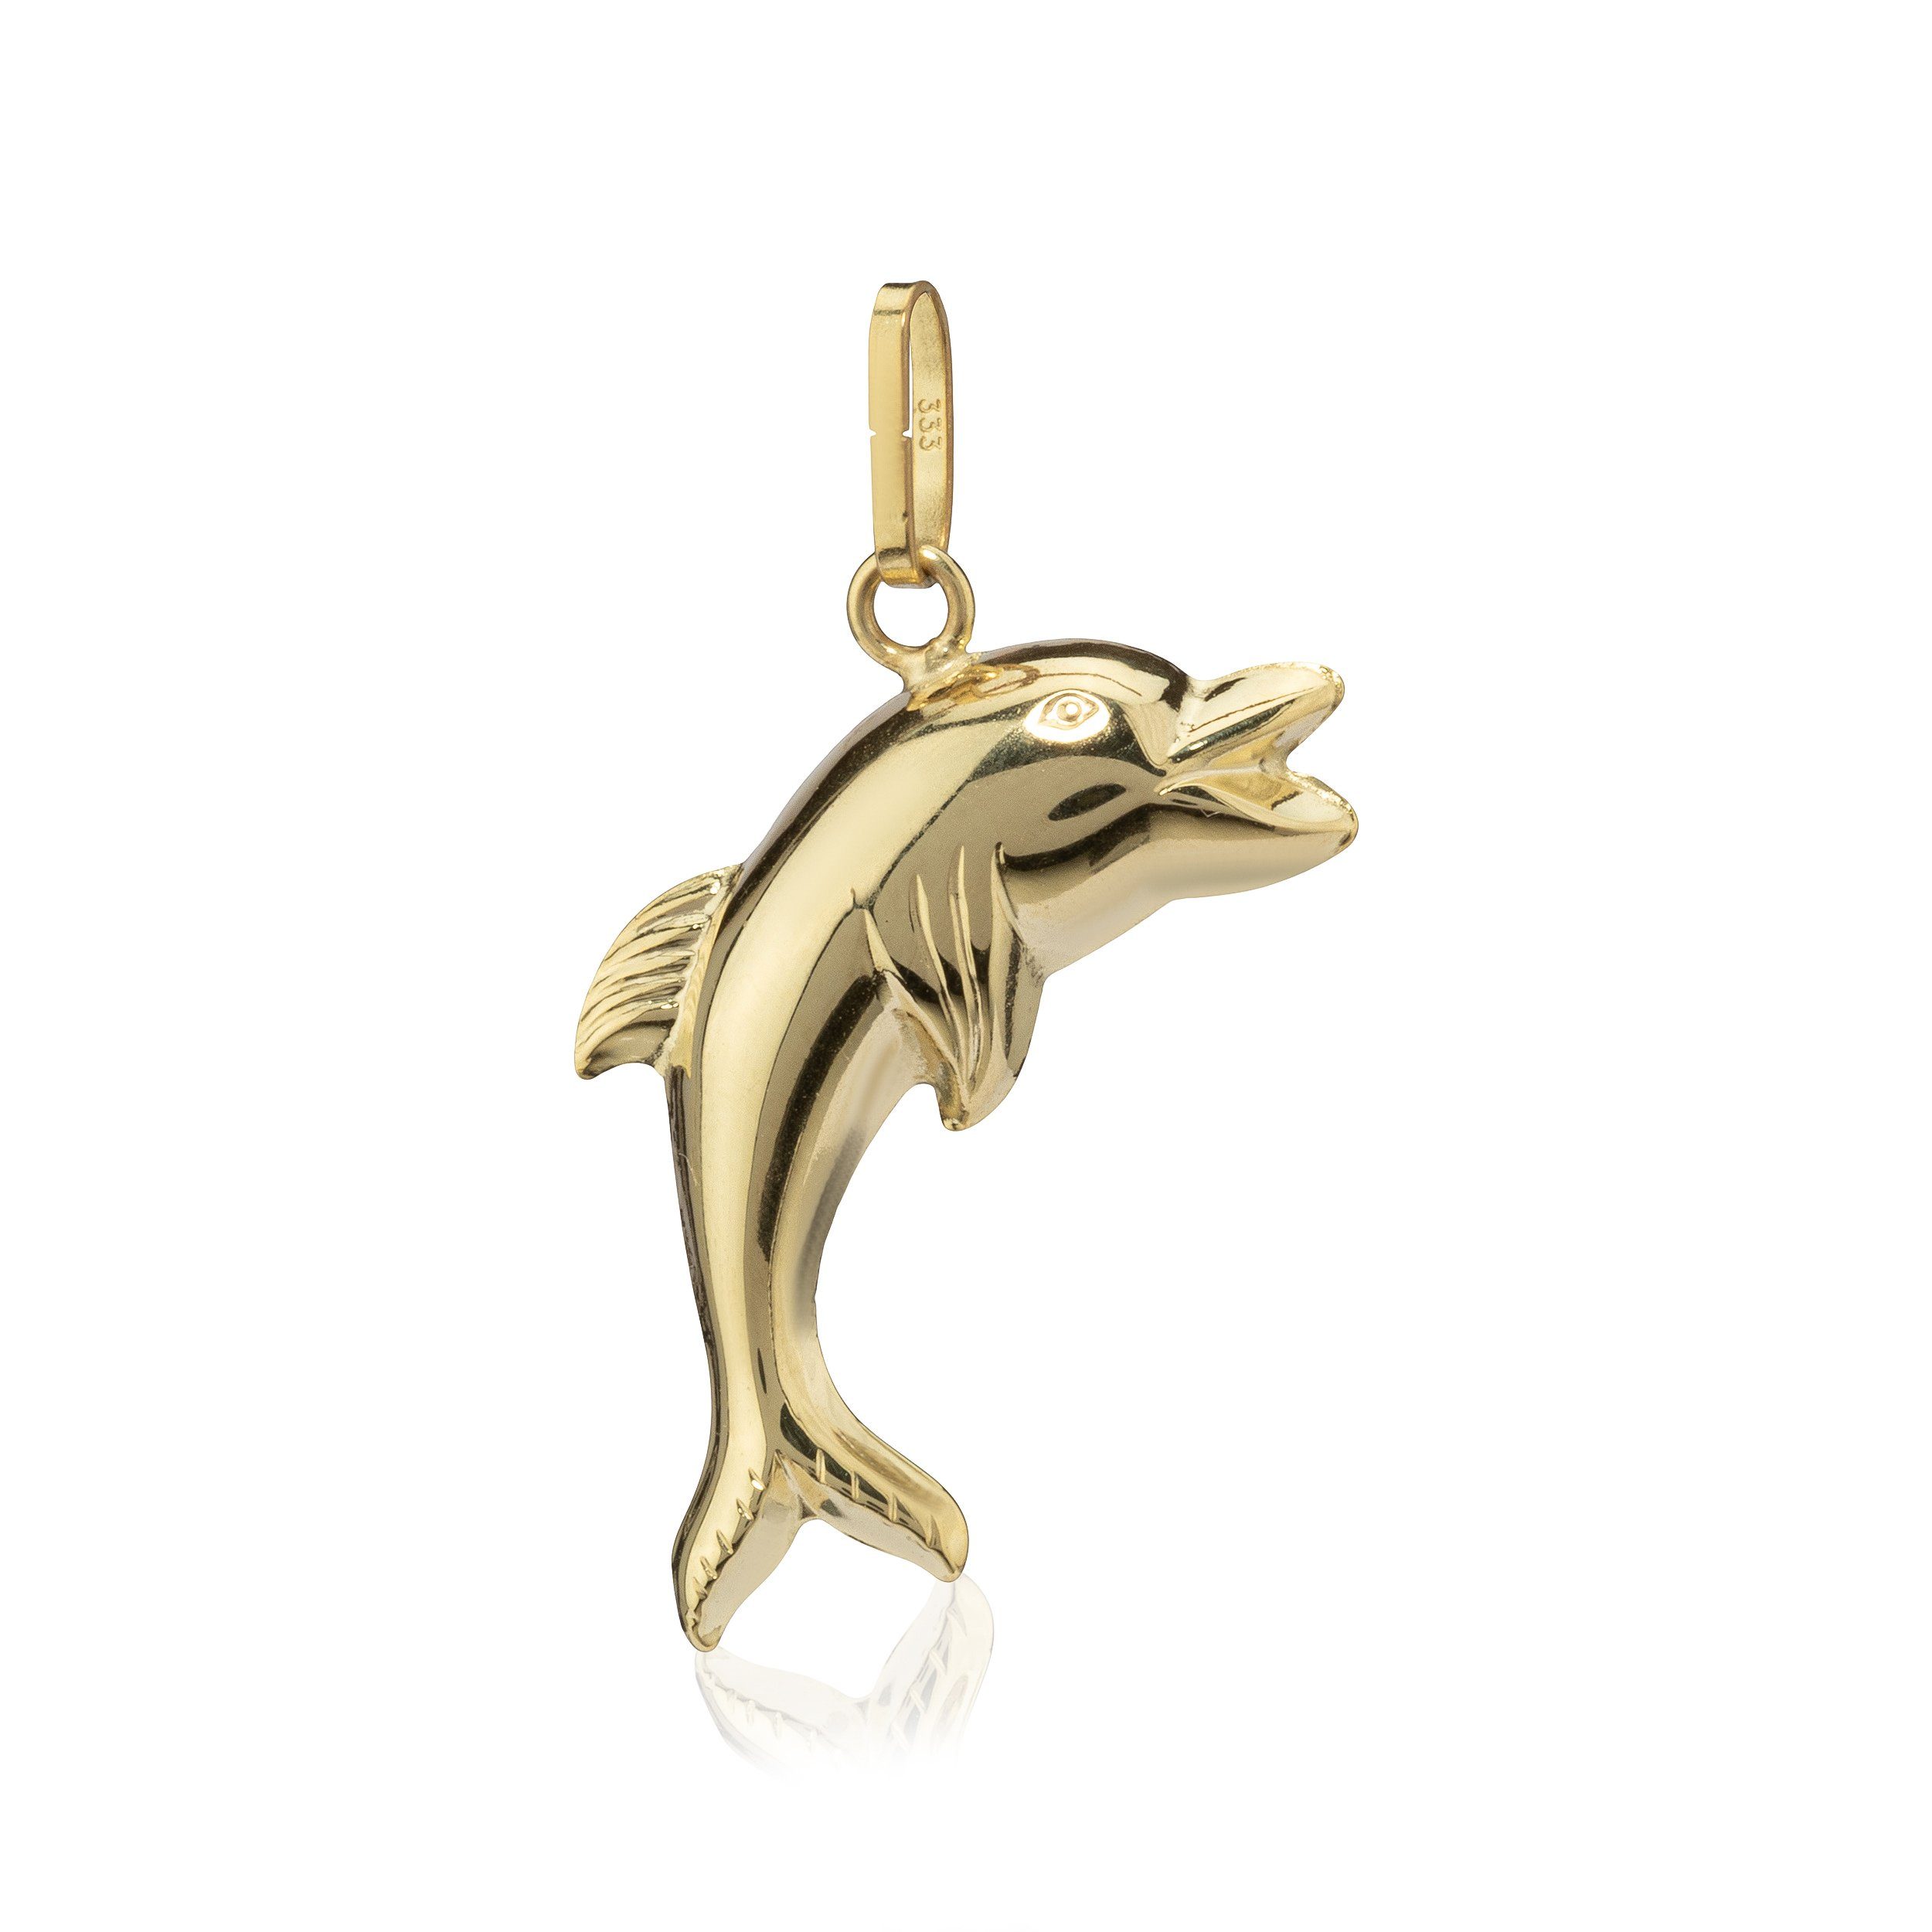 Beidseitig Delfin K 8 NKlaus Gelb Gold Kettenanhänger 333 Kettenanhänger